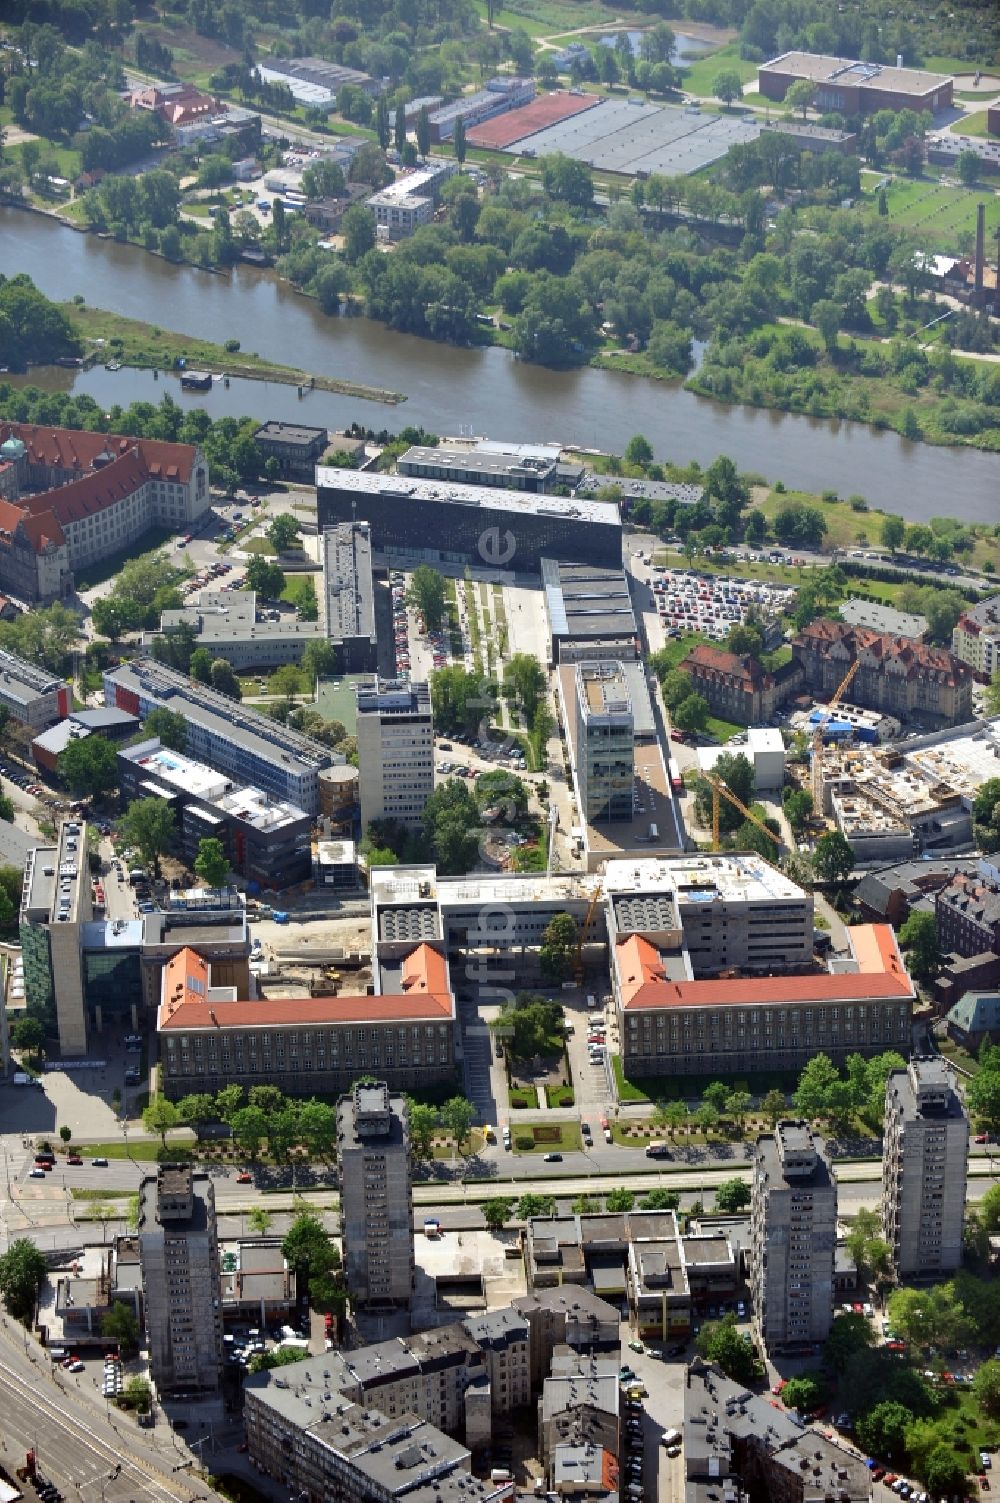 Luftbild Breslau / Wroclaw - Ausbau des Campus der Technischen Hochschule Breslau / Wroclaw in Polen